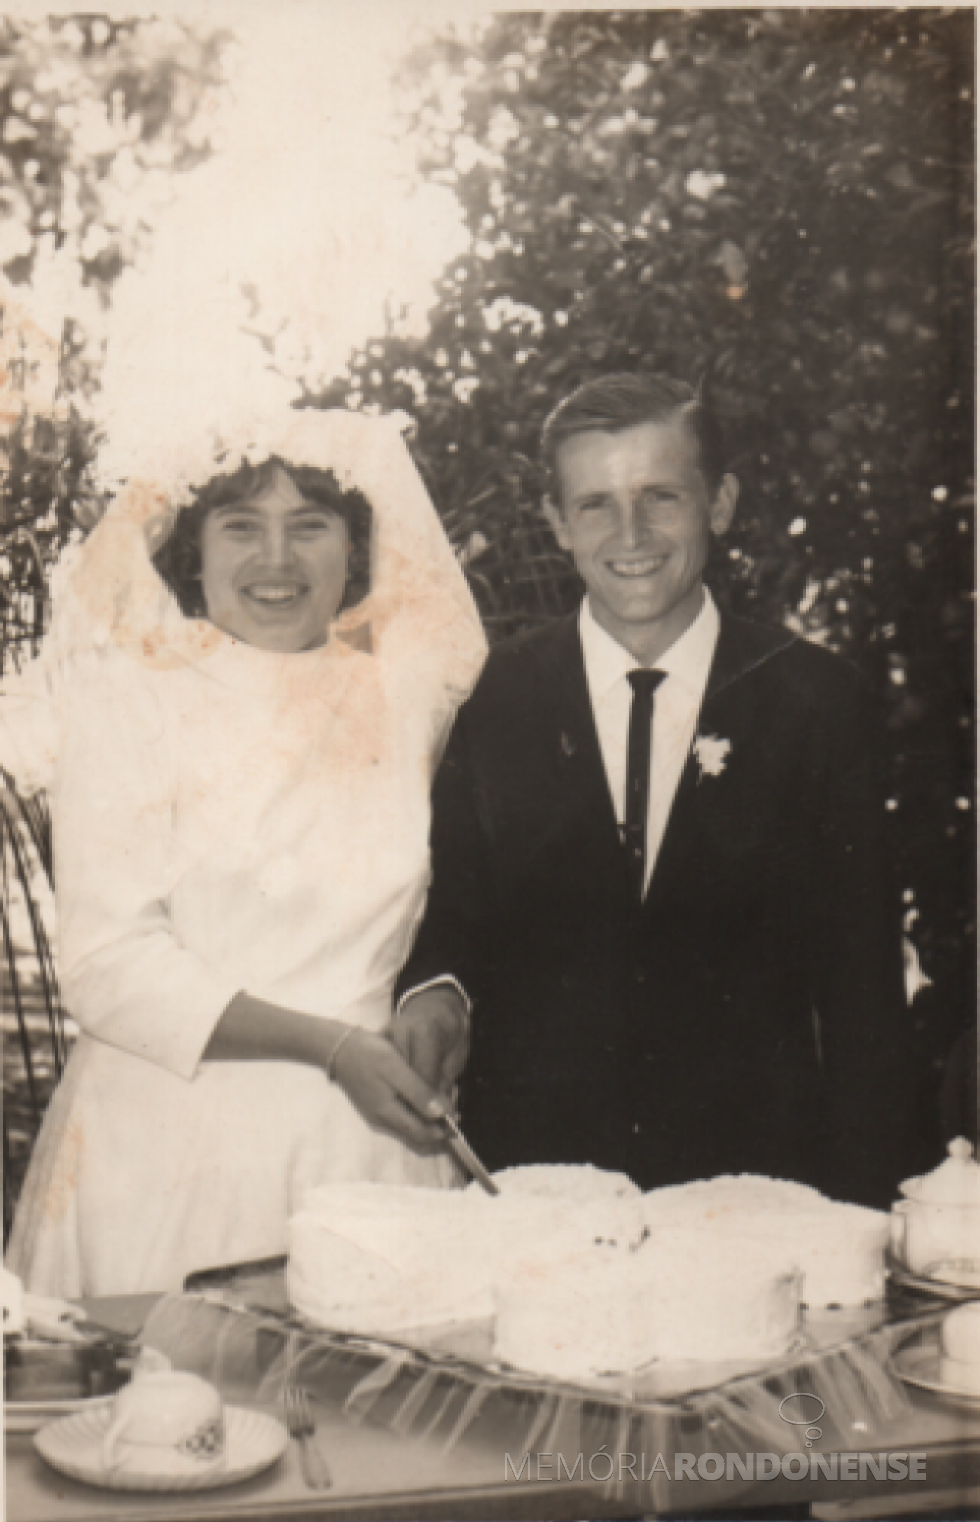 || Noivos Úrsula Stoef e João Zimmermann que se casaram em começo de maio de 1968.
Imagem: Acervo do casal - FOTO 1 - 